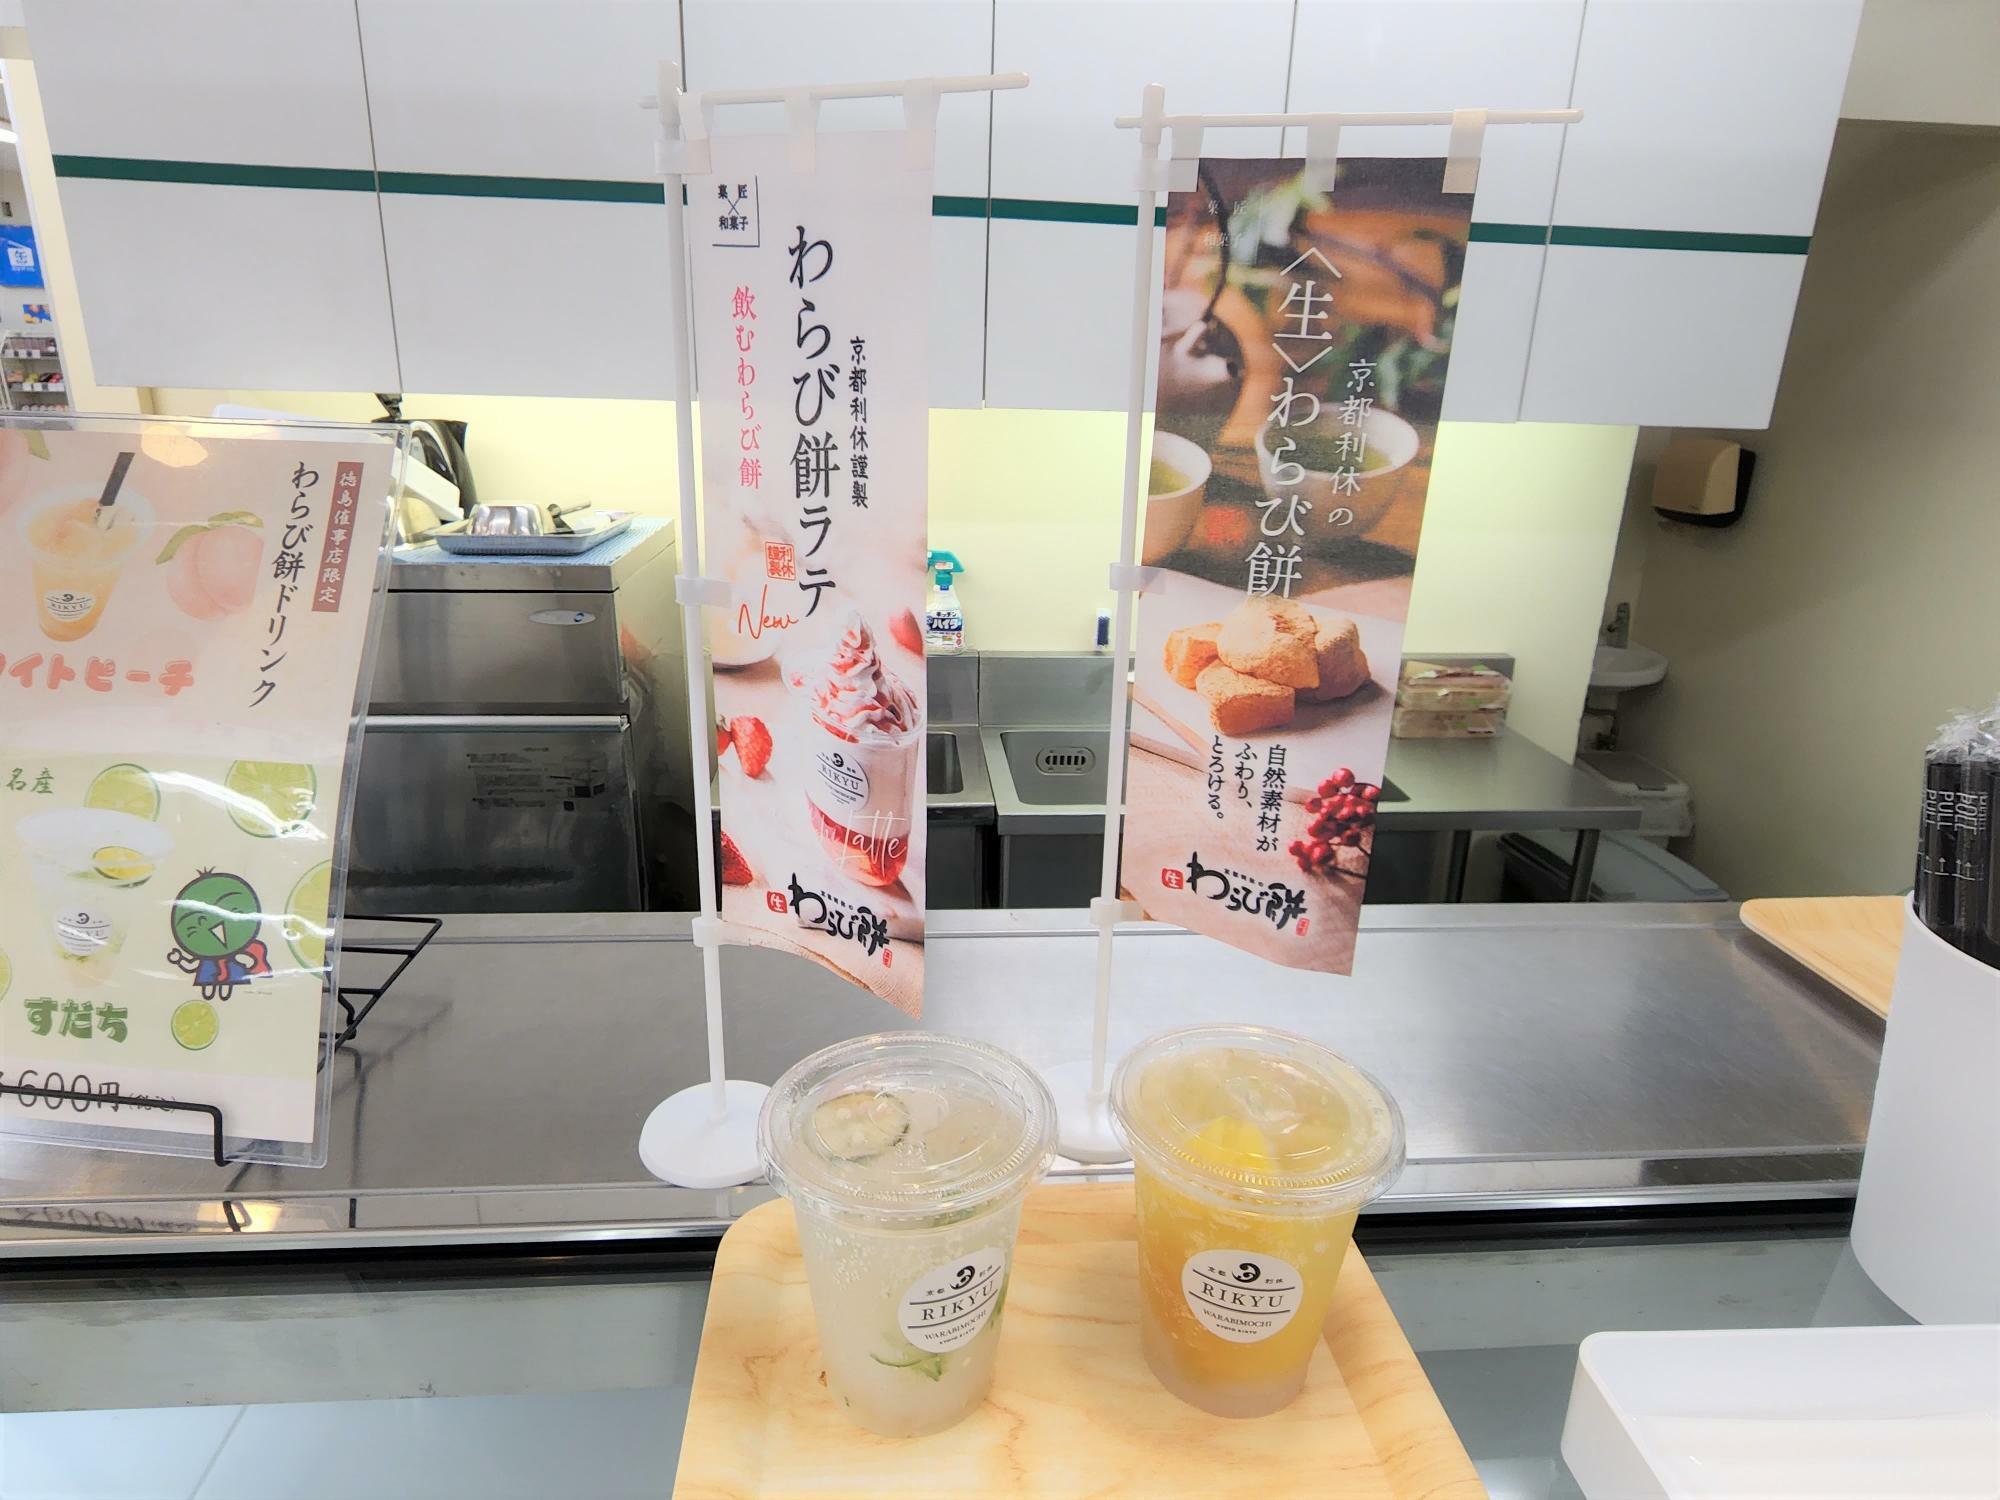 「京都利休の生わらび餅」のわらび餅ドリンク。左が「徳島名産すだち」、右が「パインソーダ」。